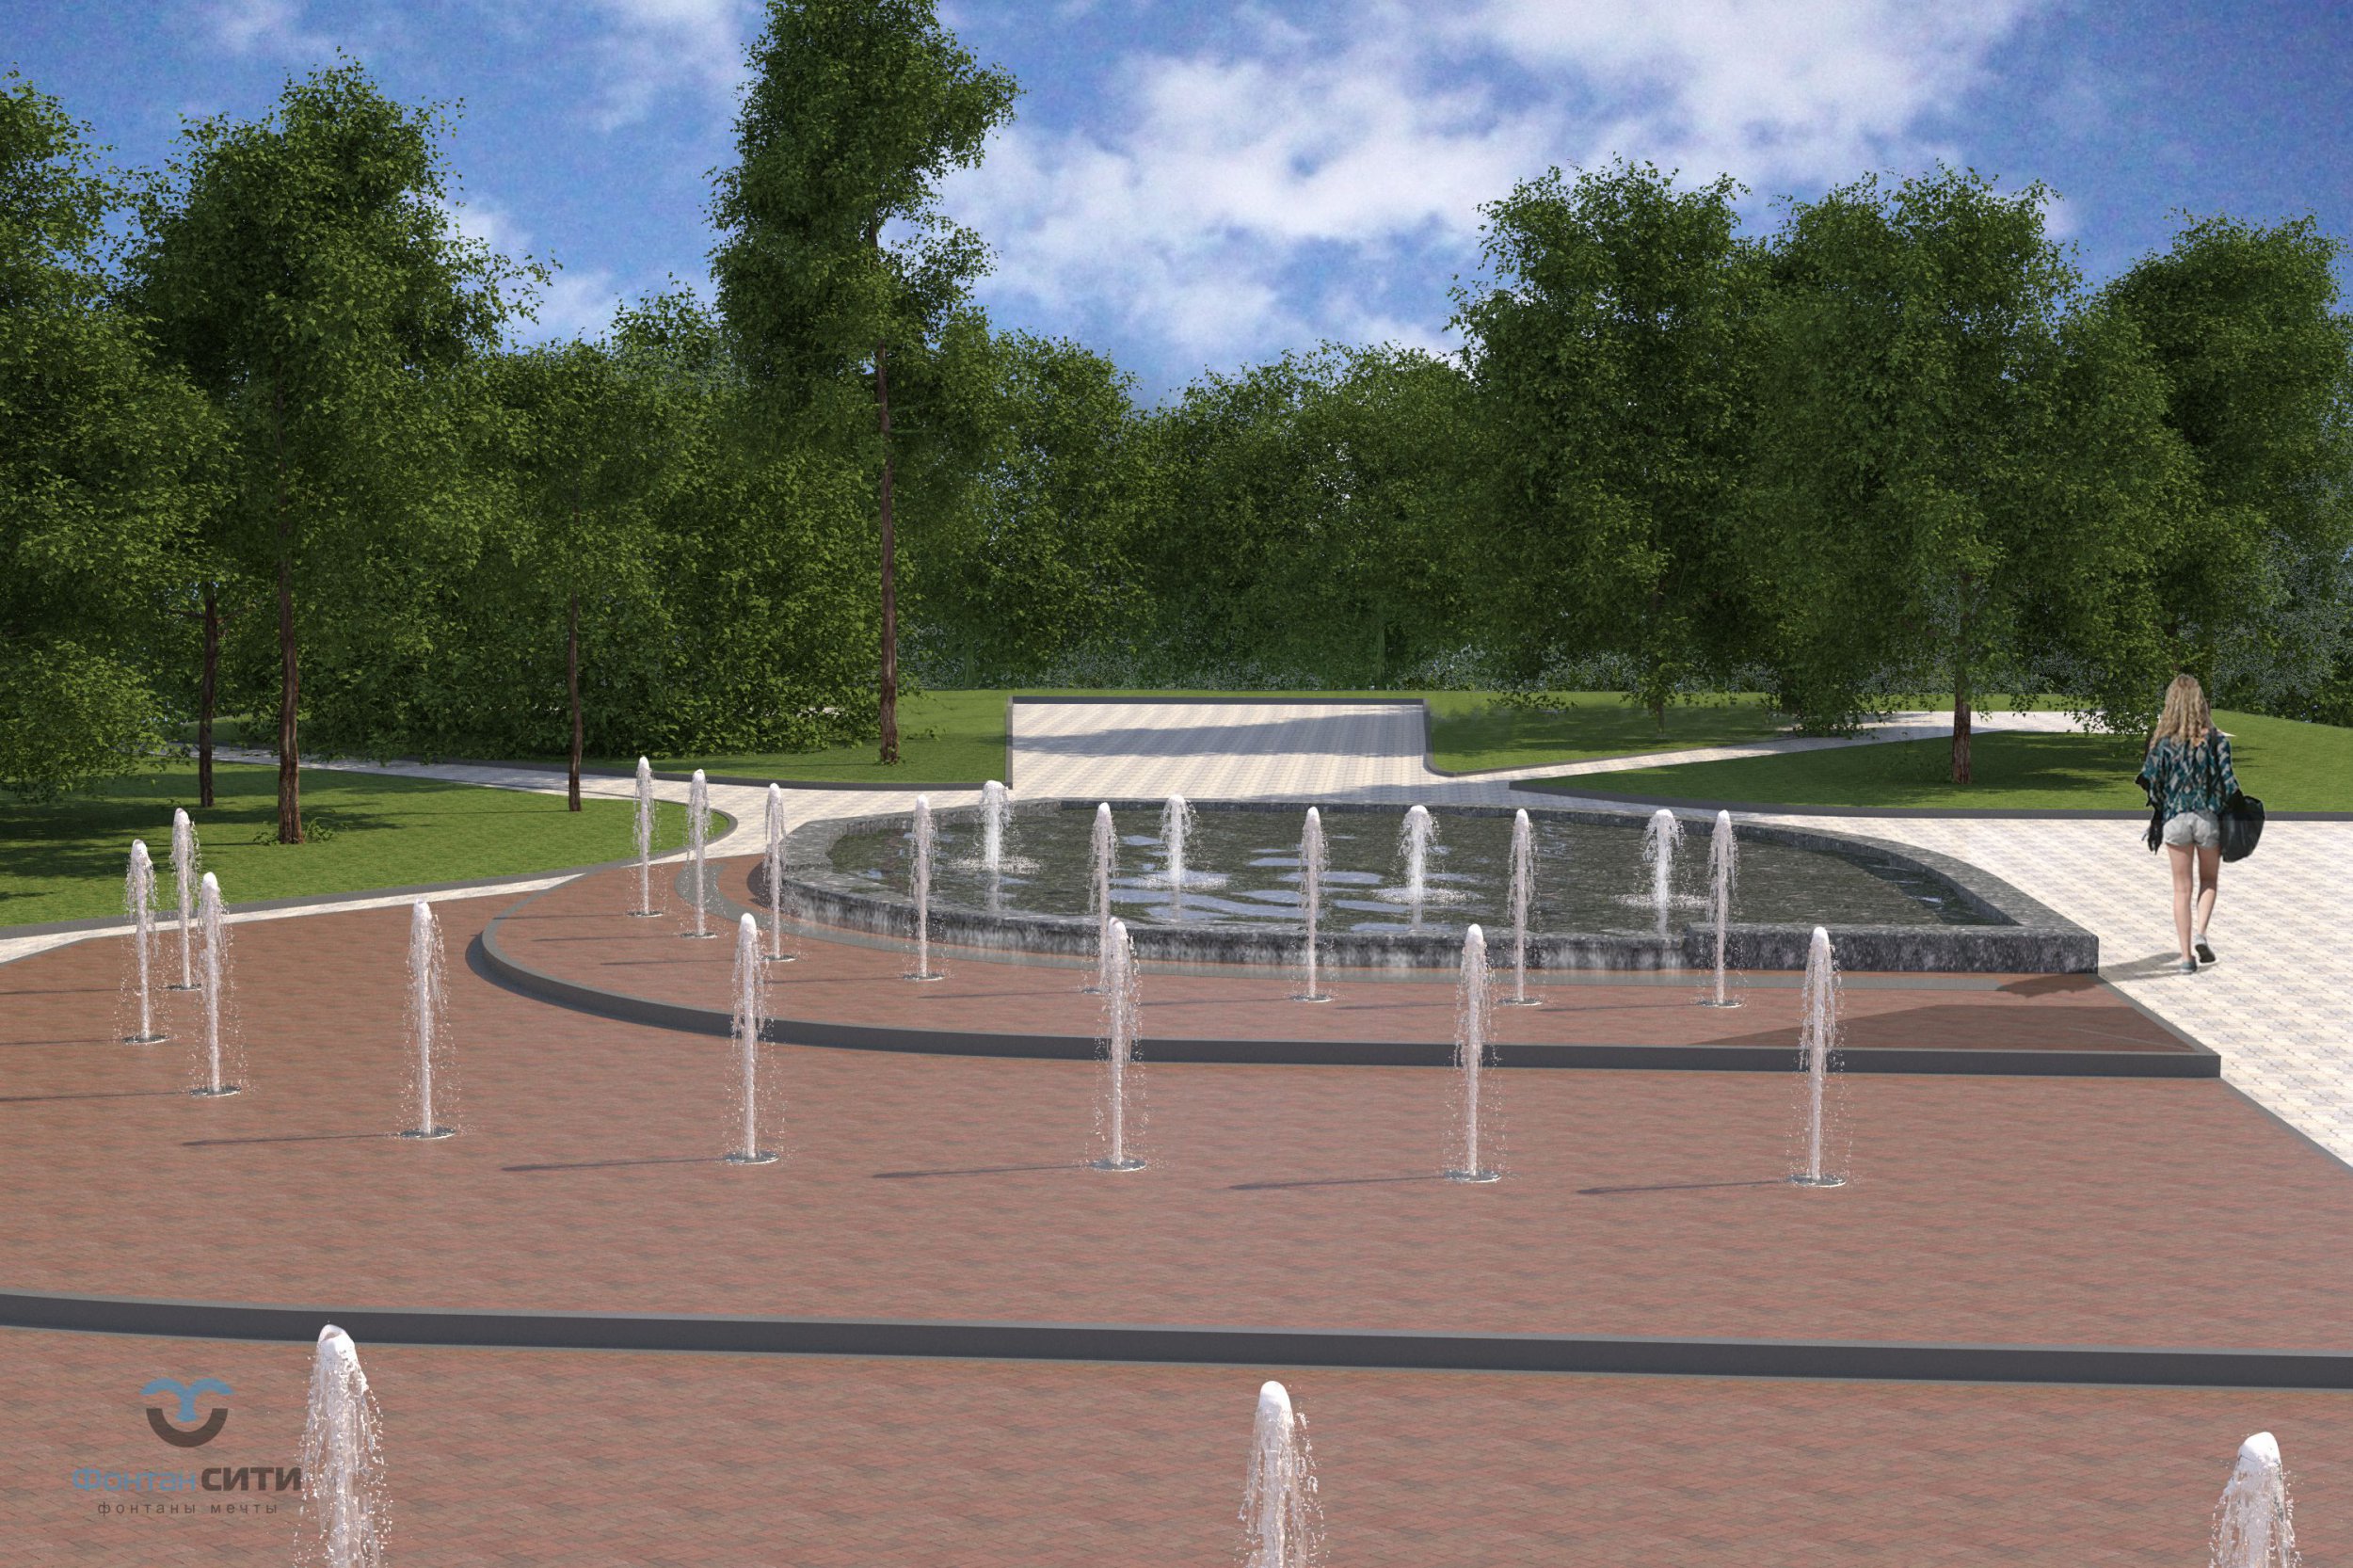 Проект Визуализация пешеходного фонтана г. Елецк Фонтан СИТИ Тел: 8-800-234-5405